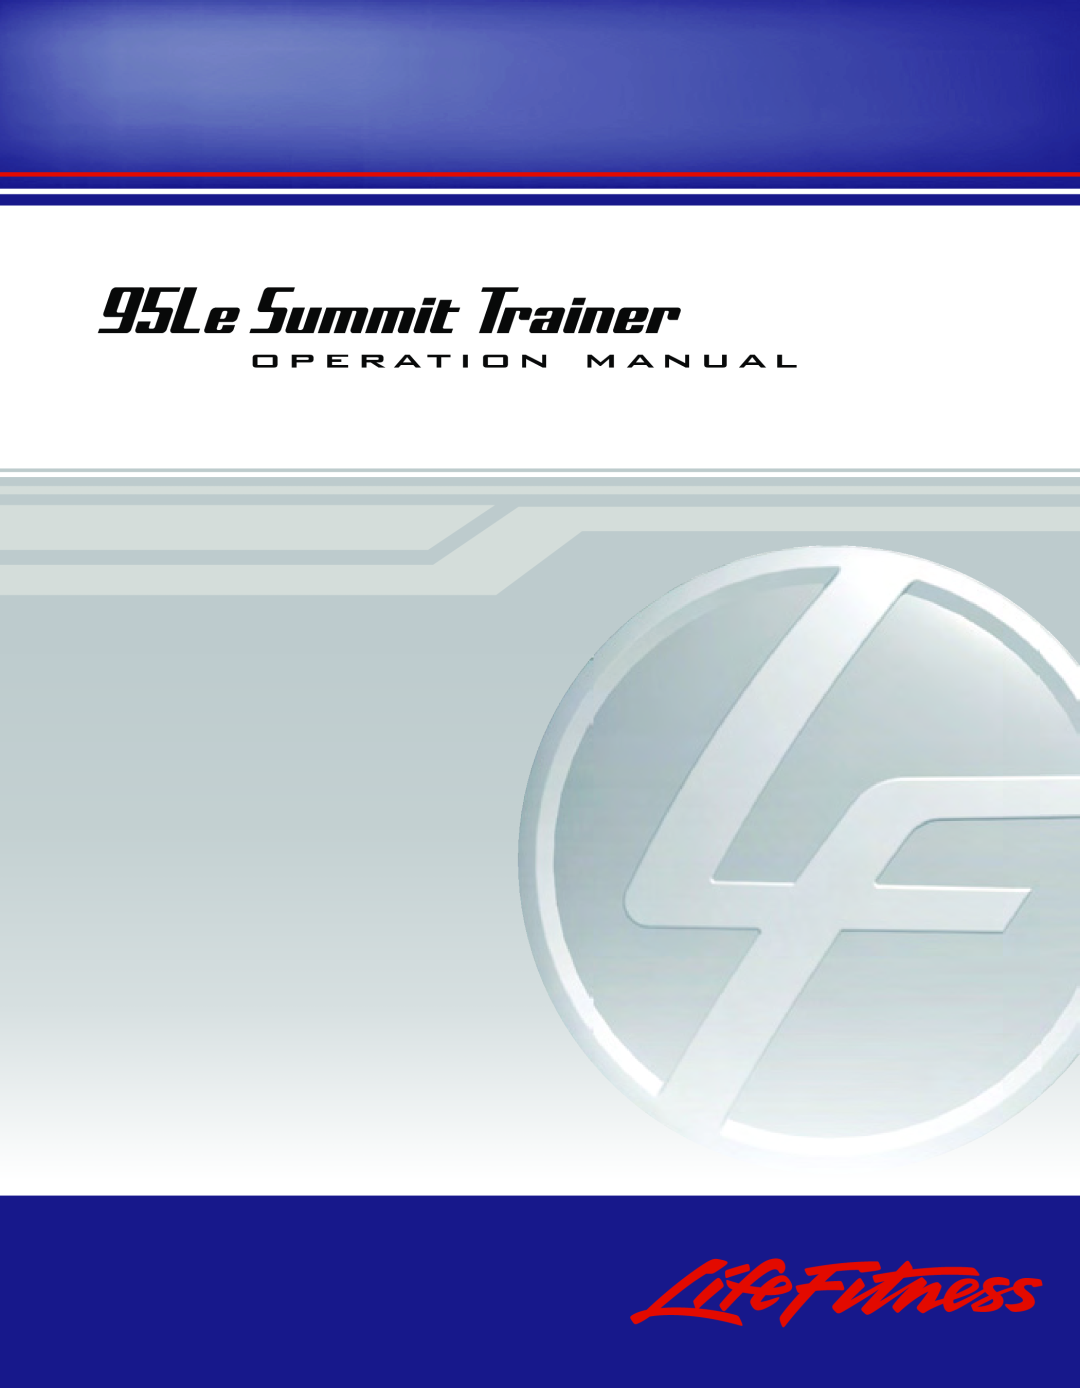 Life Fitness operation manual 95Le Summit Trainer, o p e rat i o n m a n ua l 